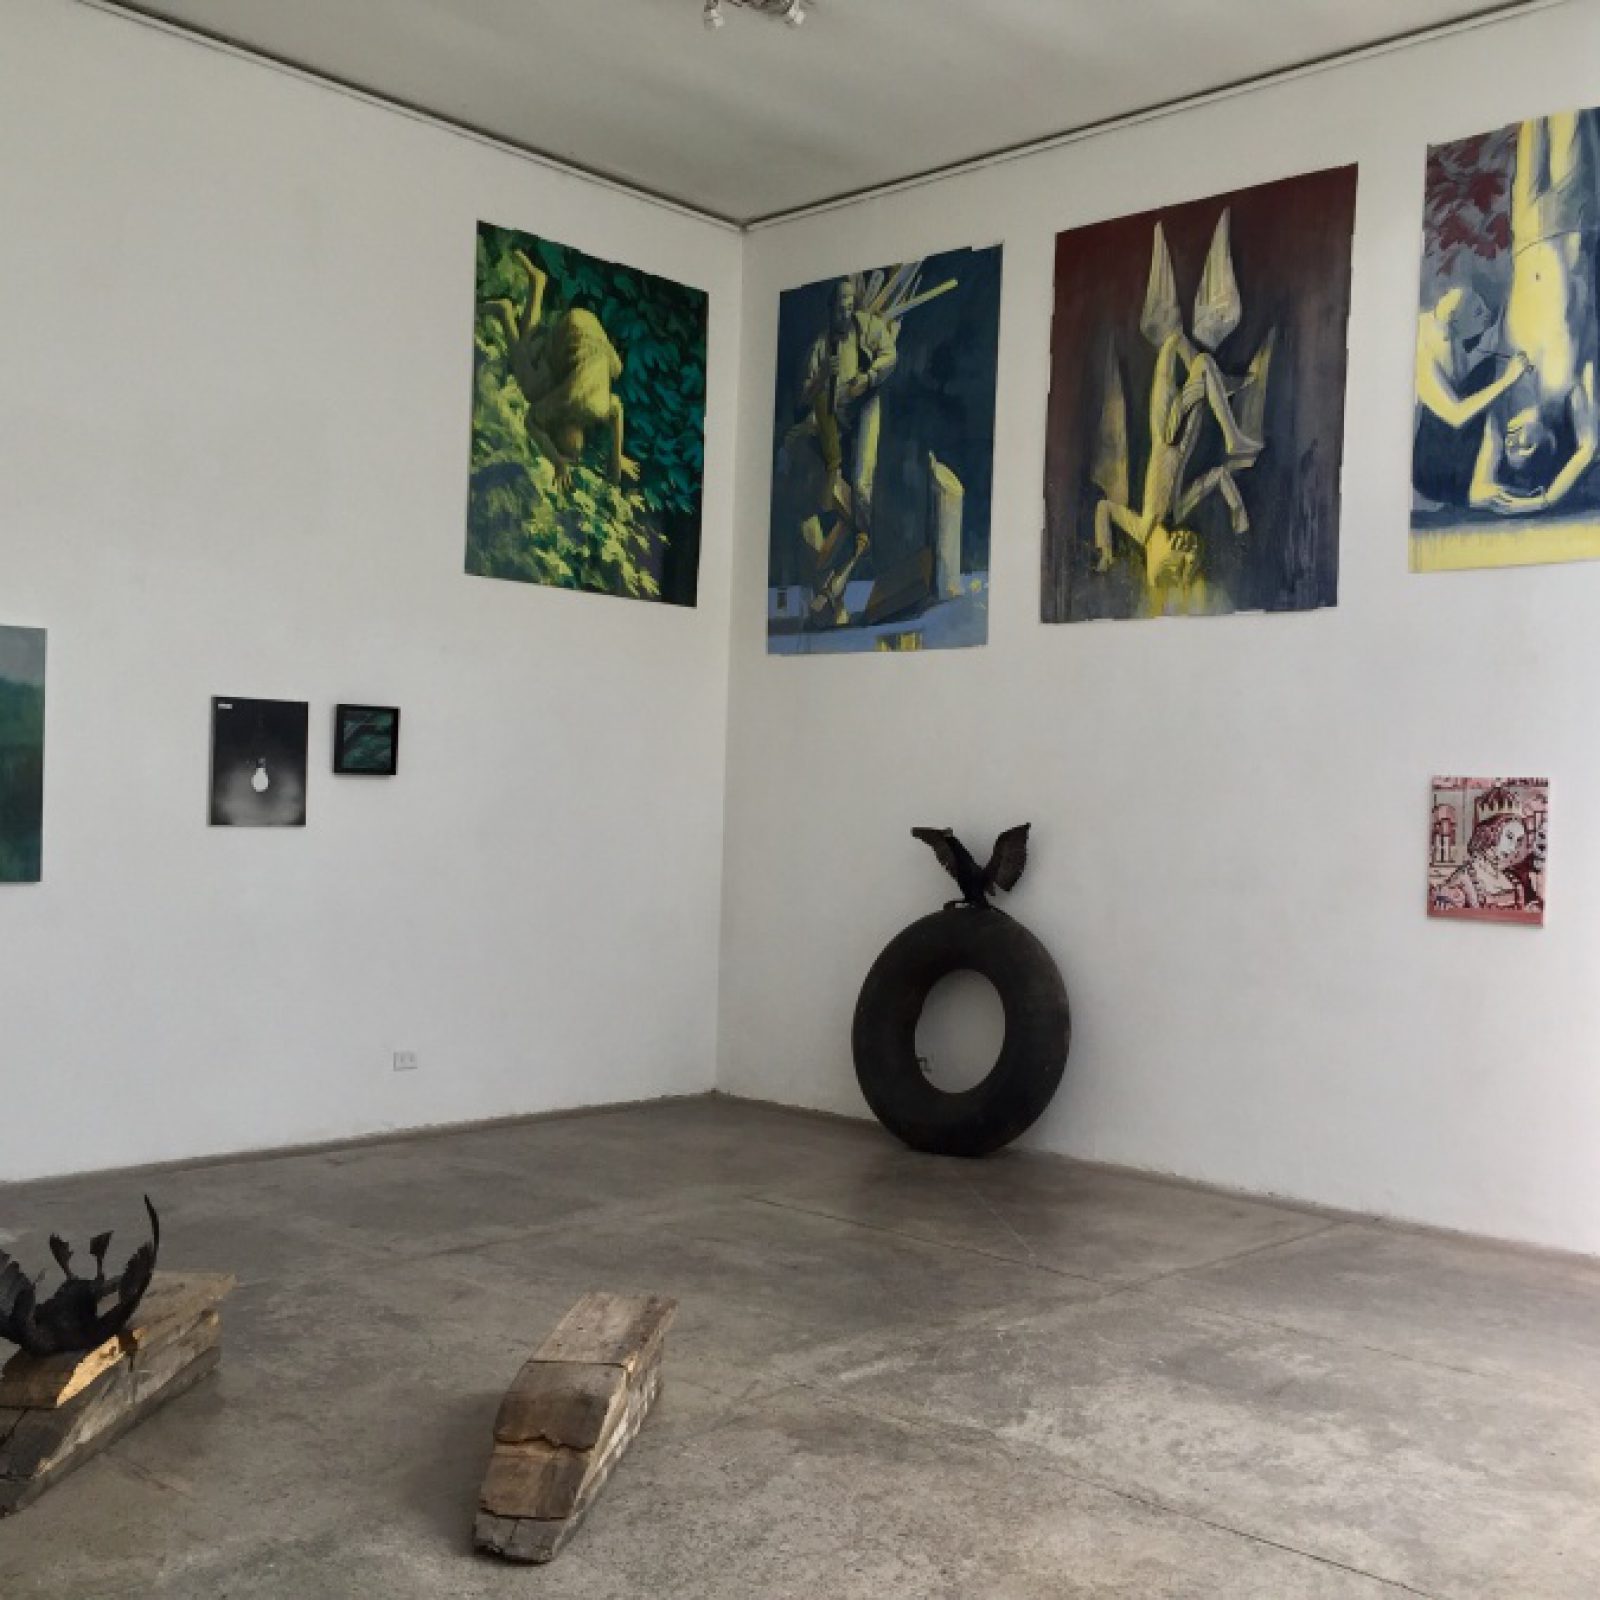 Vista de la exposición "La Caverna", en Galería XS, Santiago de Chile, 2018. Cortesía de la galería